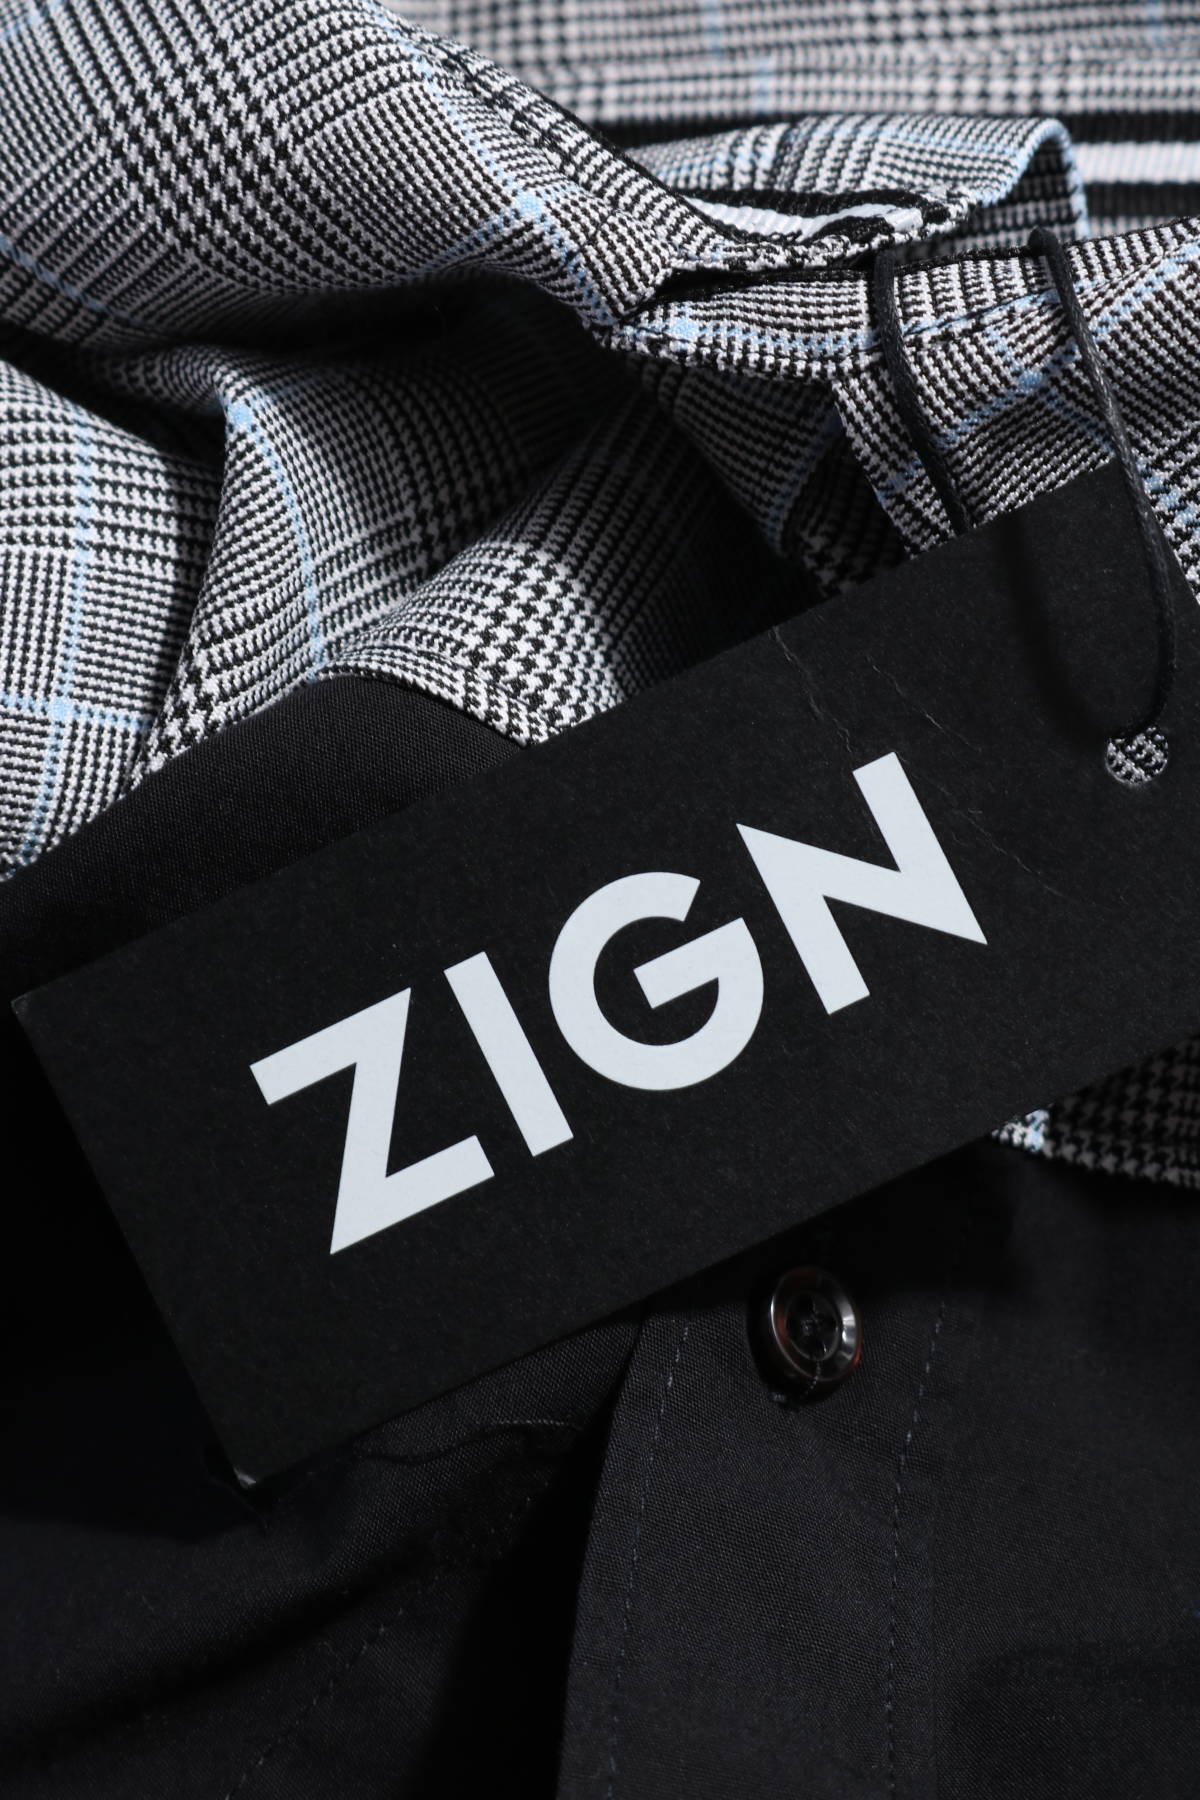 Риза ZIGN3